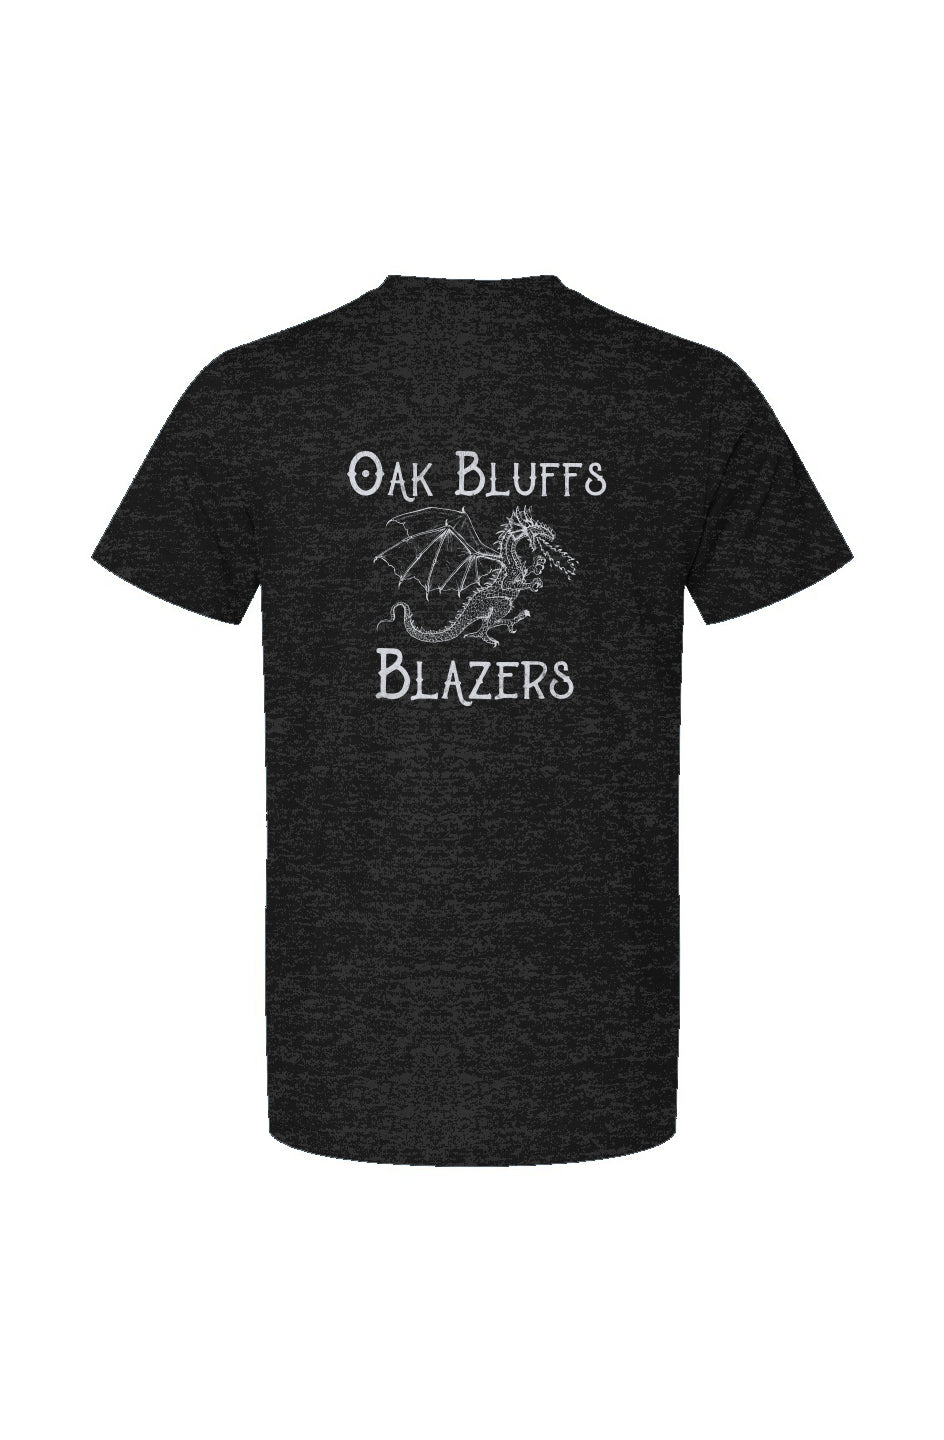 Oak Bluffs Blazers Unisex Tee